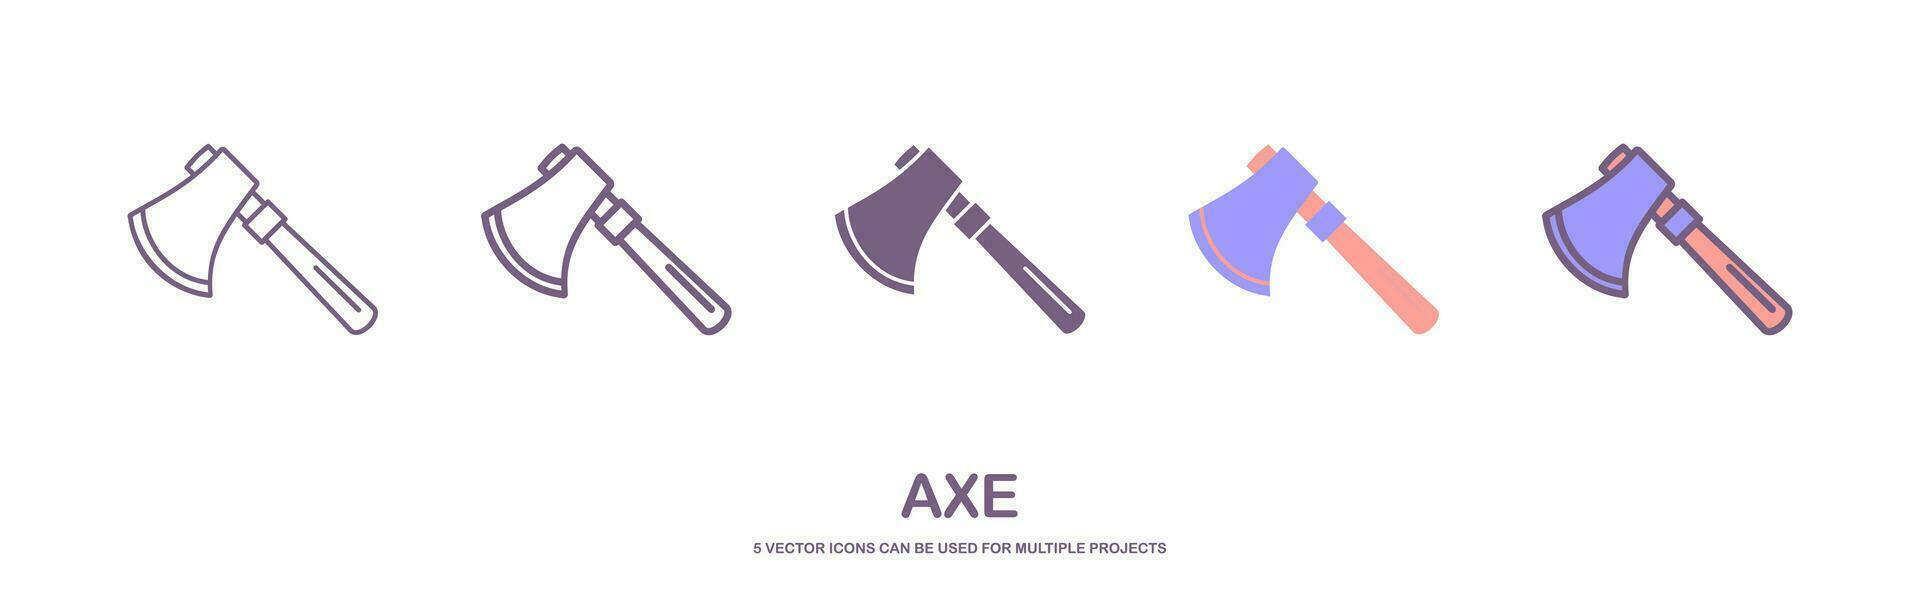 Axt Werkzeug Symbol Design Vektor Vorlage. Axt Symbol Illustration isoliert auf Weiß Hintergrund. Vektor Illustration.